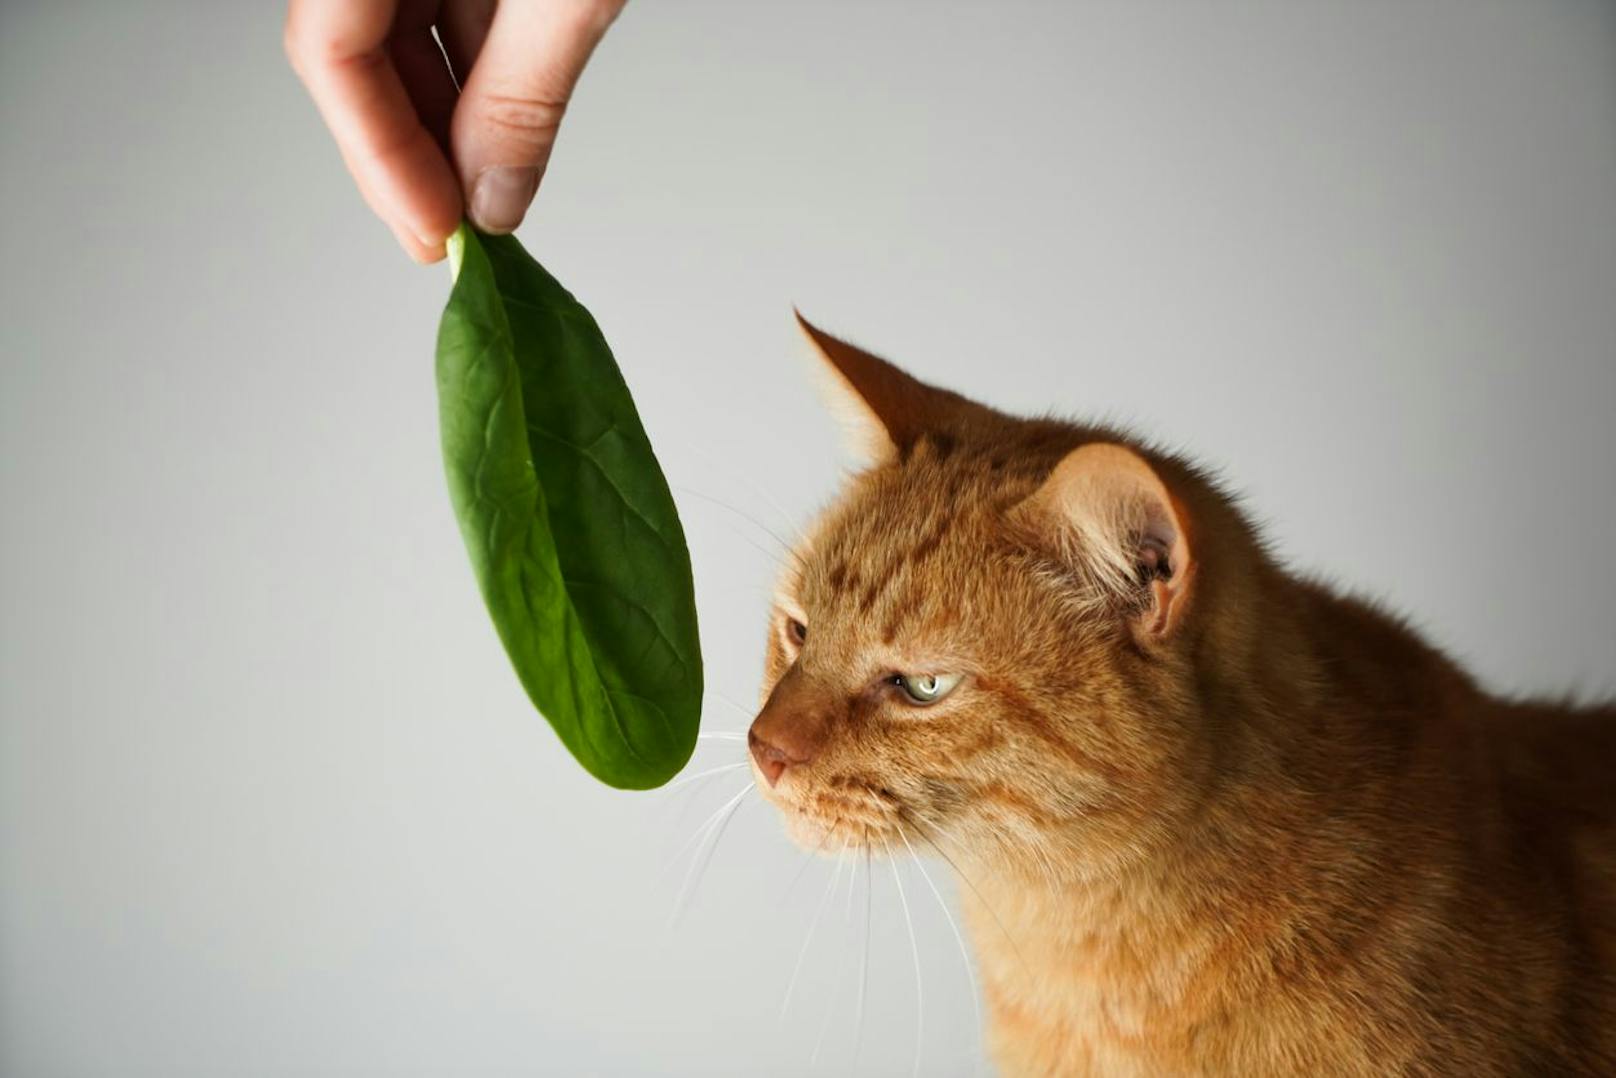 <strong>Spinat</strong> ist als Blattgemüse nicht nur für uns Zweibeiner eine Vitaminbombe. Leicht vorgekocht sollte es der Katze zumindest einmal angeboten werden - denn wenn sie es frisst, hast du ein paar Sorgen weniger.